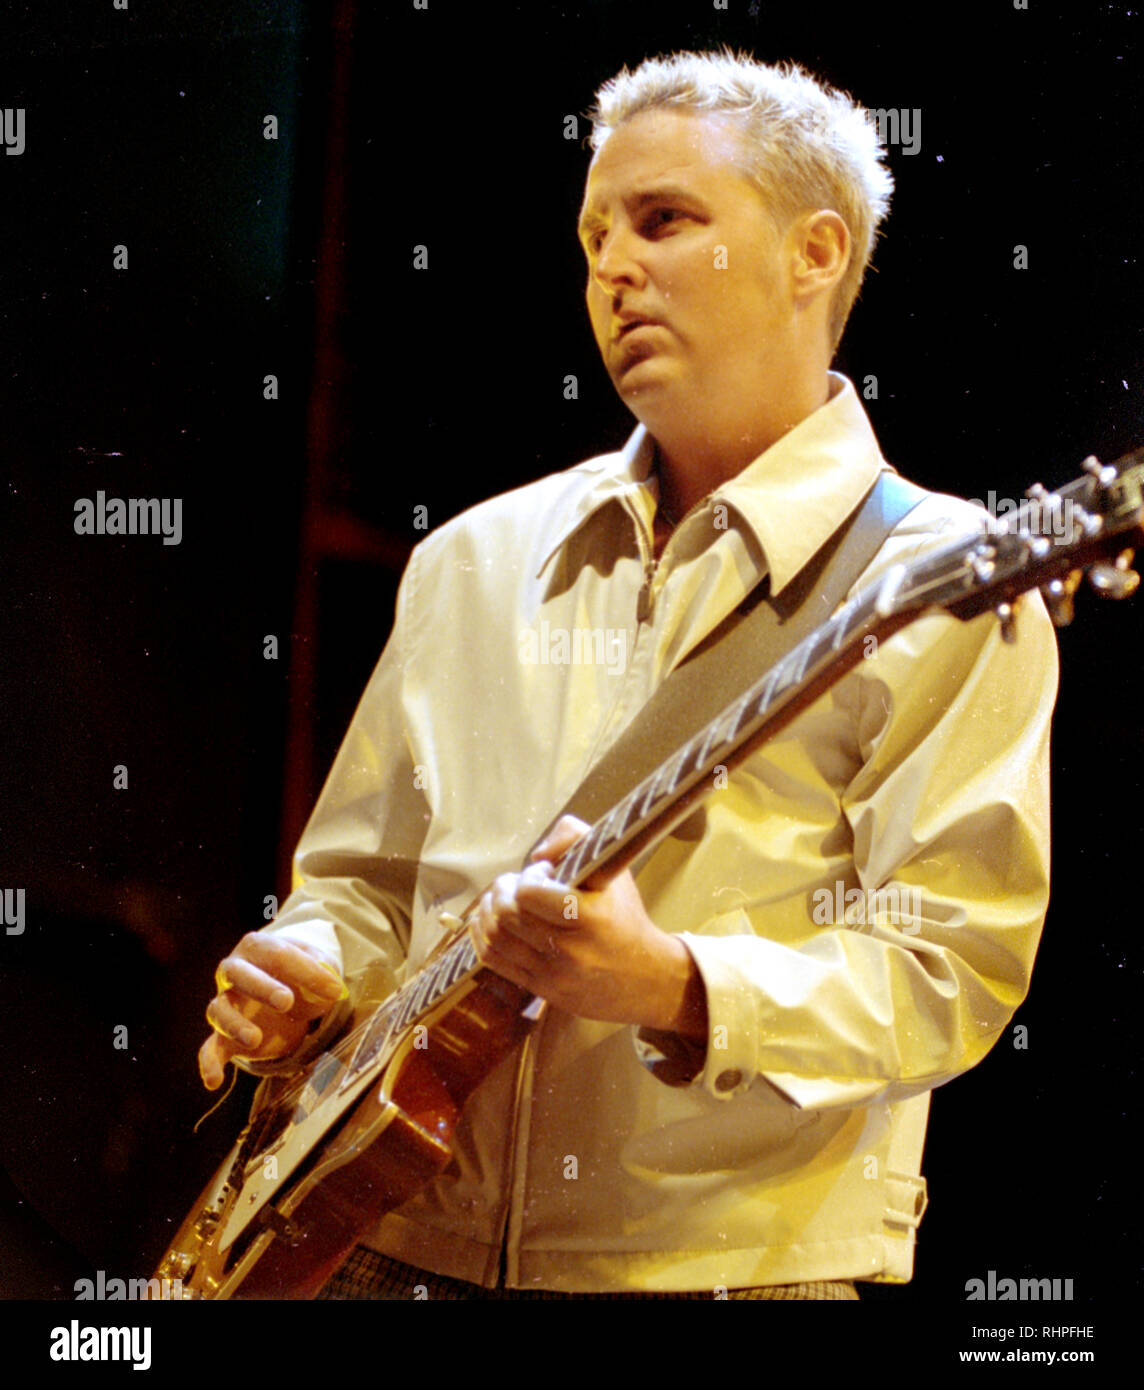 Pearl Jam est le guitariste Mike McCready à la scène le Tweeter Center à Mansfield, MA USA Août 2000 photo de Bill belknap Banque D'Images